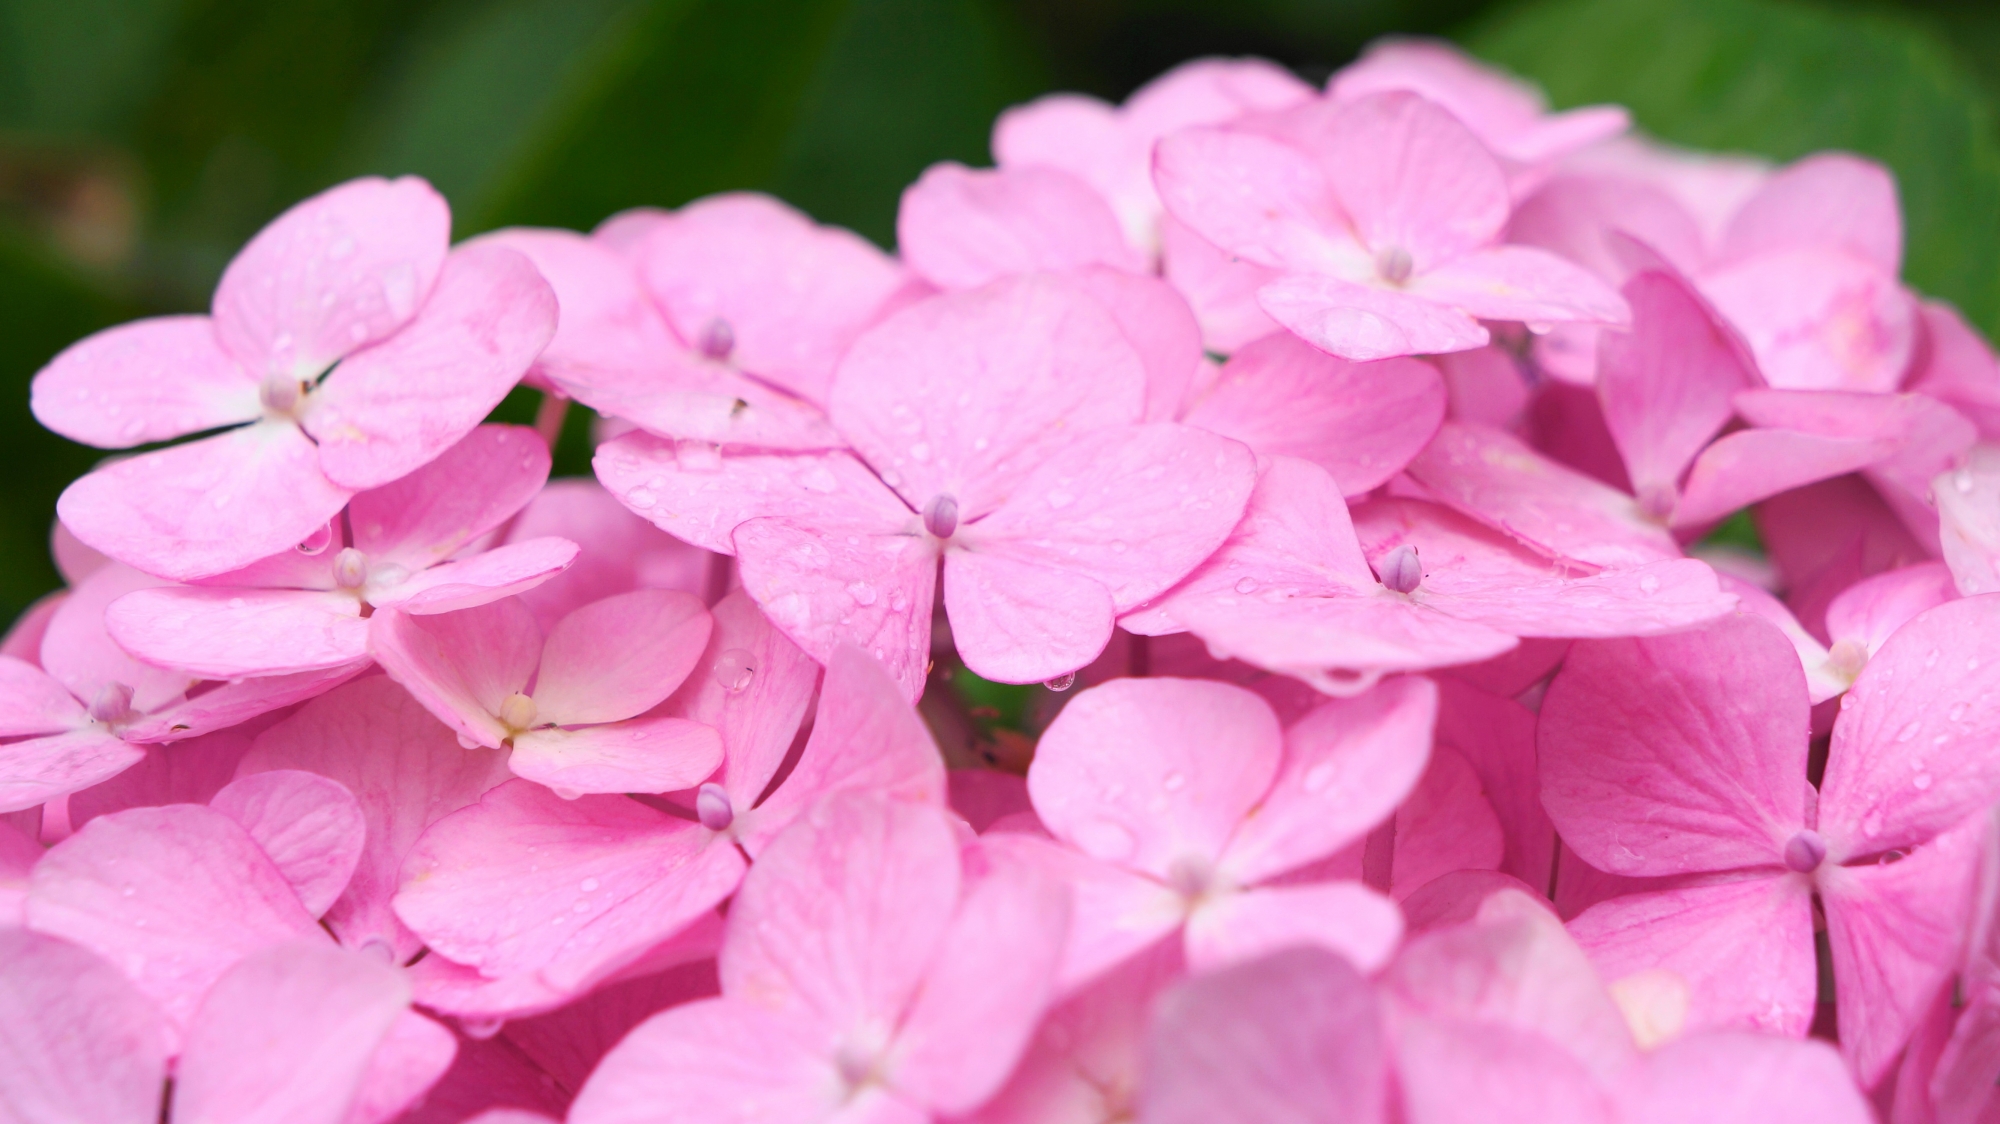 宇治川派流の雨で潤う可愛いアジサイの花びら